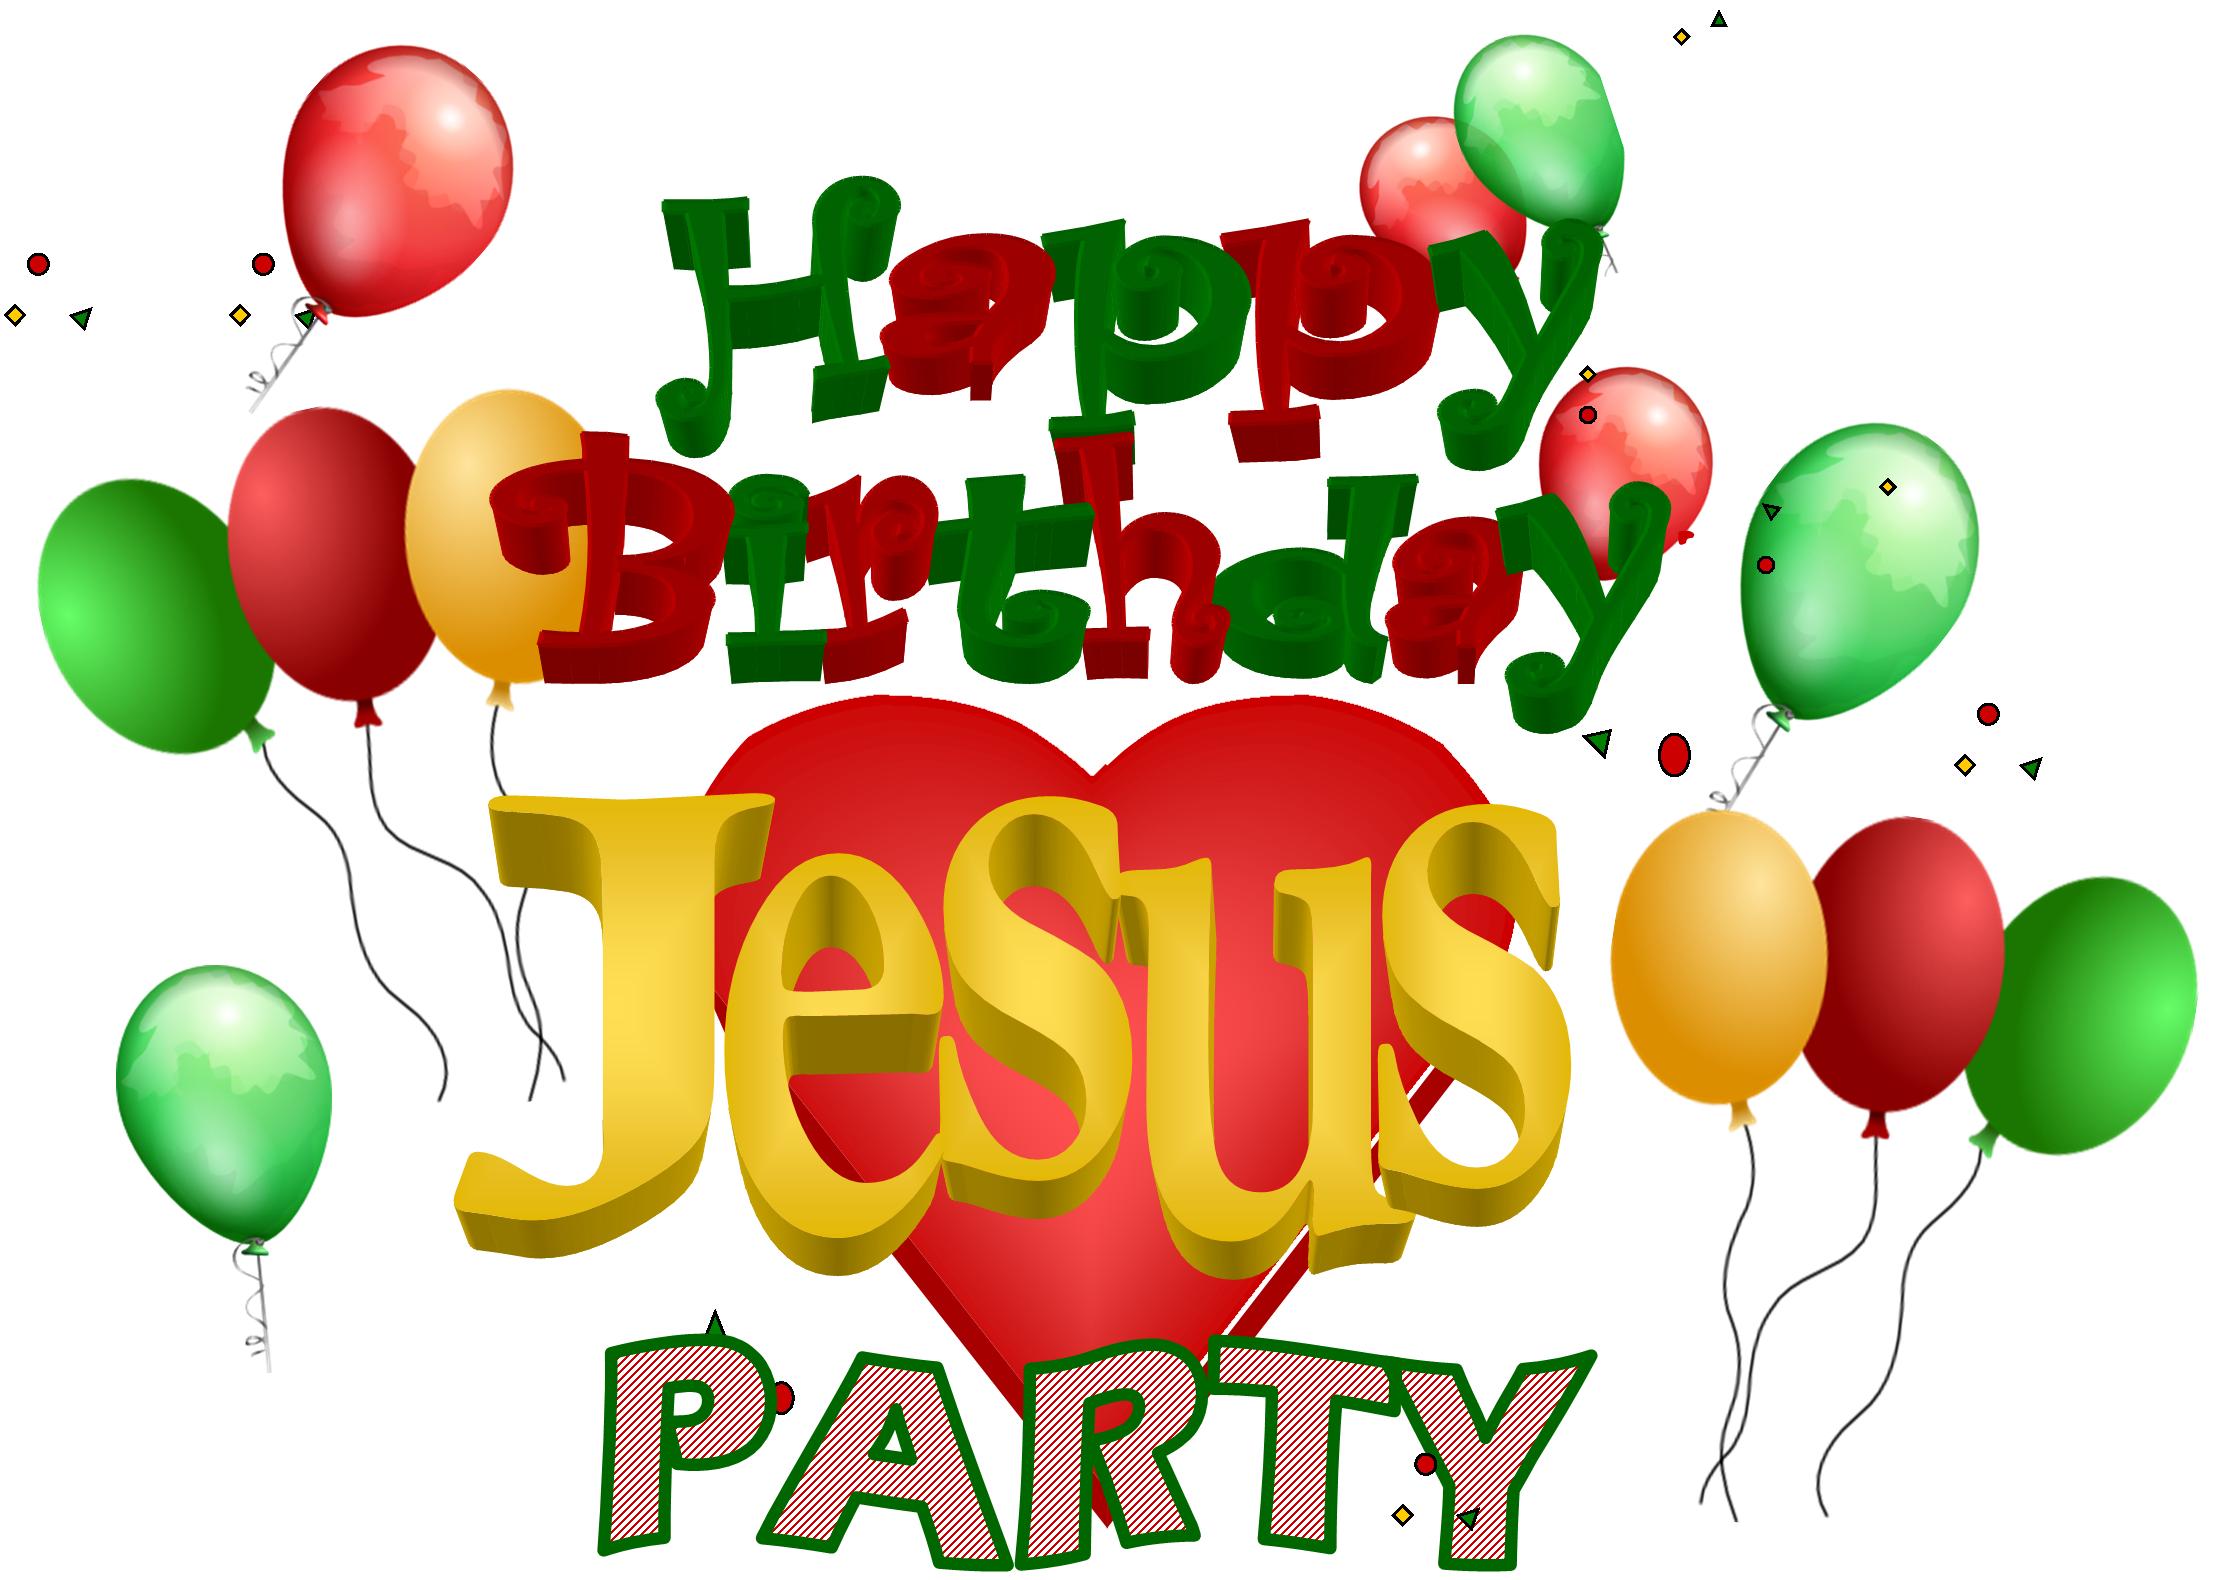 Happy Birthday Jesus Clip Art